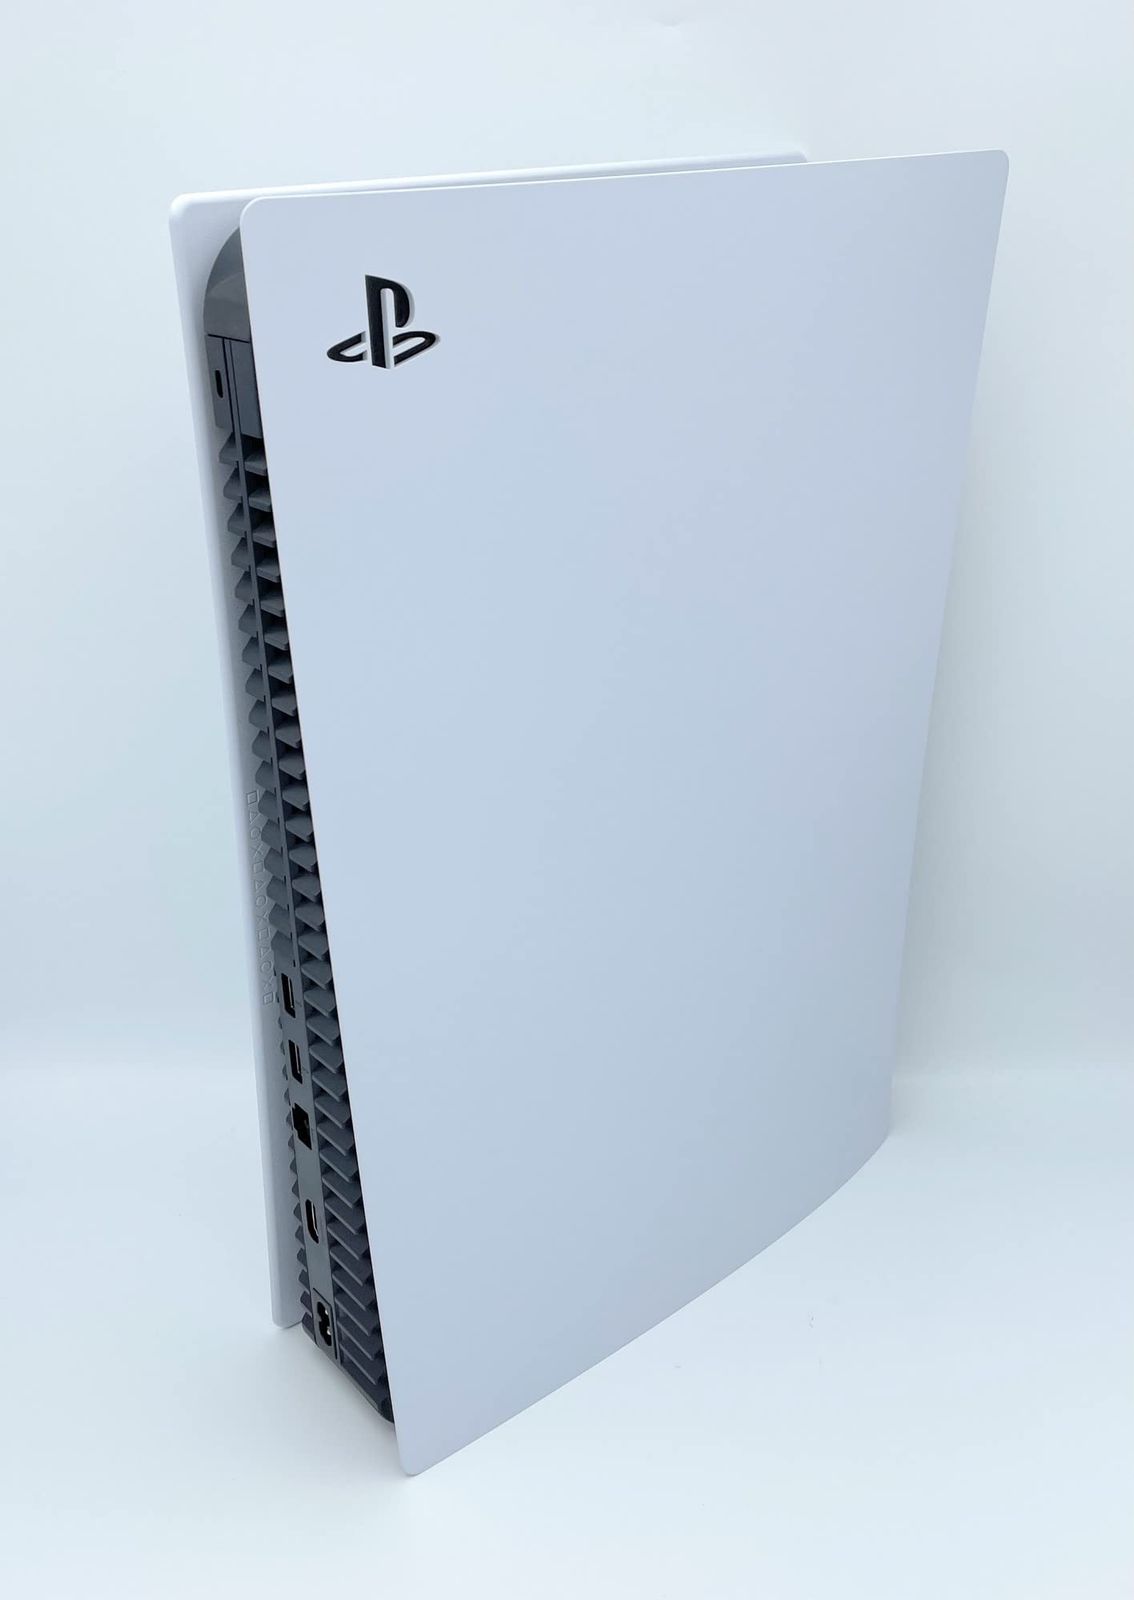 PlayStation 5 デジタル・エディション グランツーリスモ7 同梱版